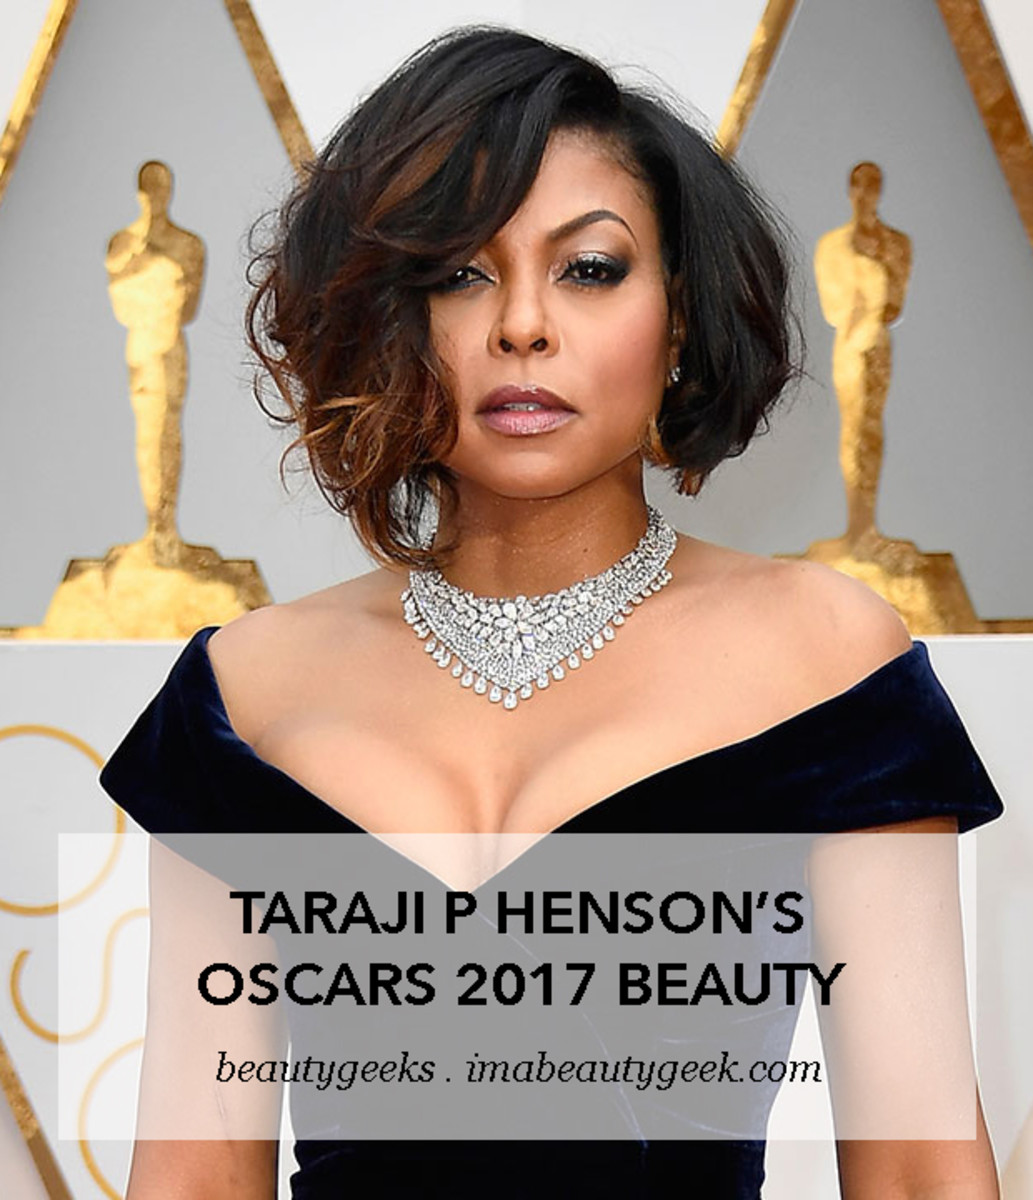 Taraji P Henson's Oscar 2017 Beauty